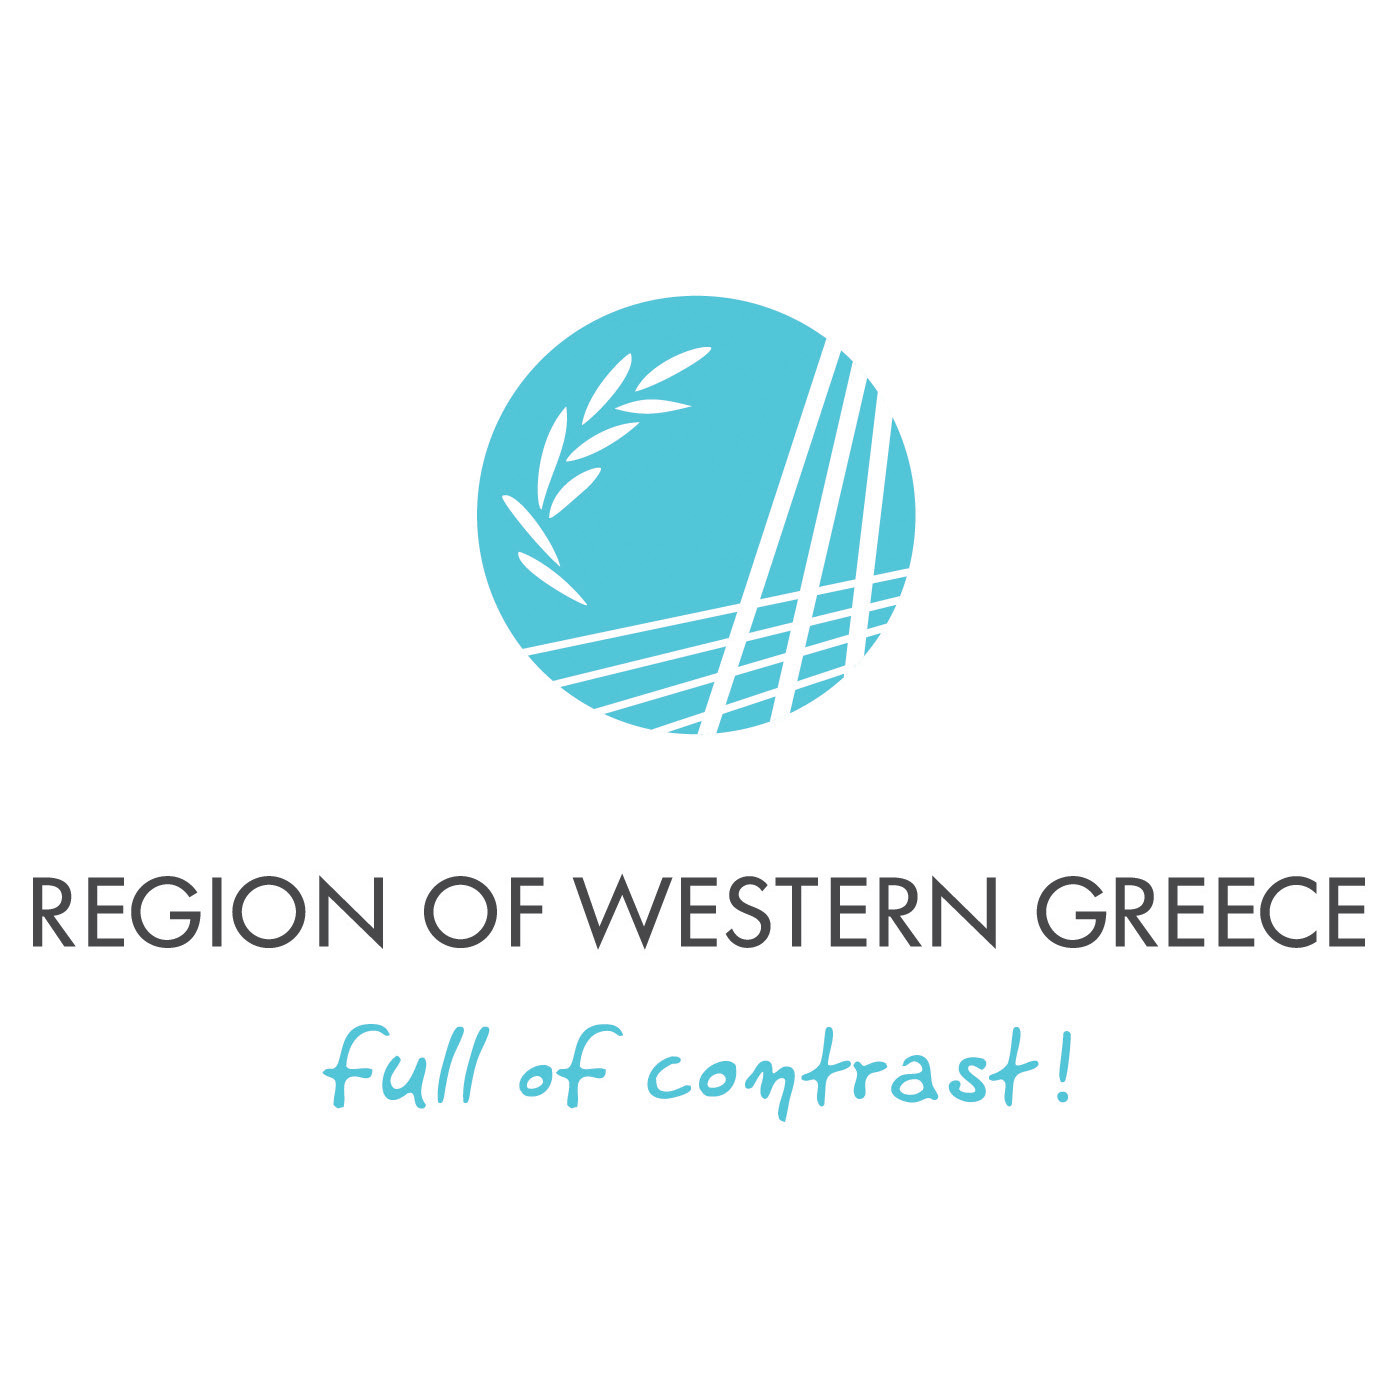 Region of Western Greece